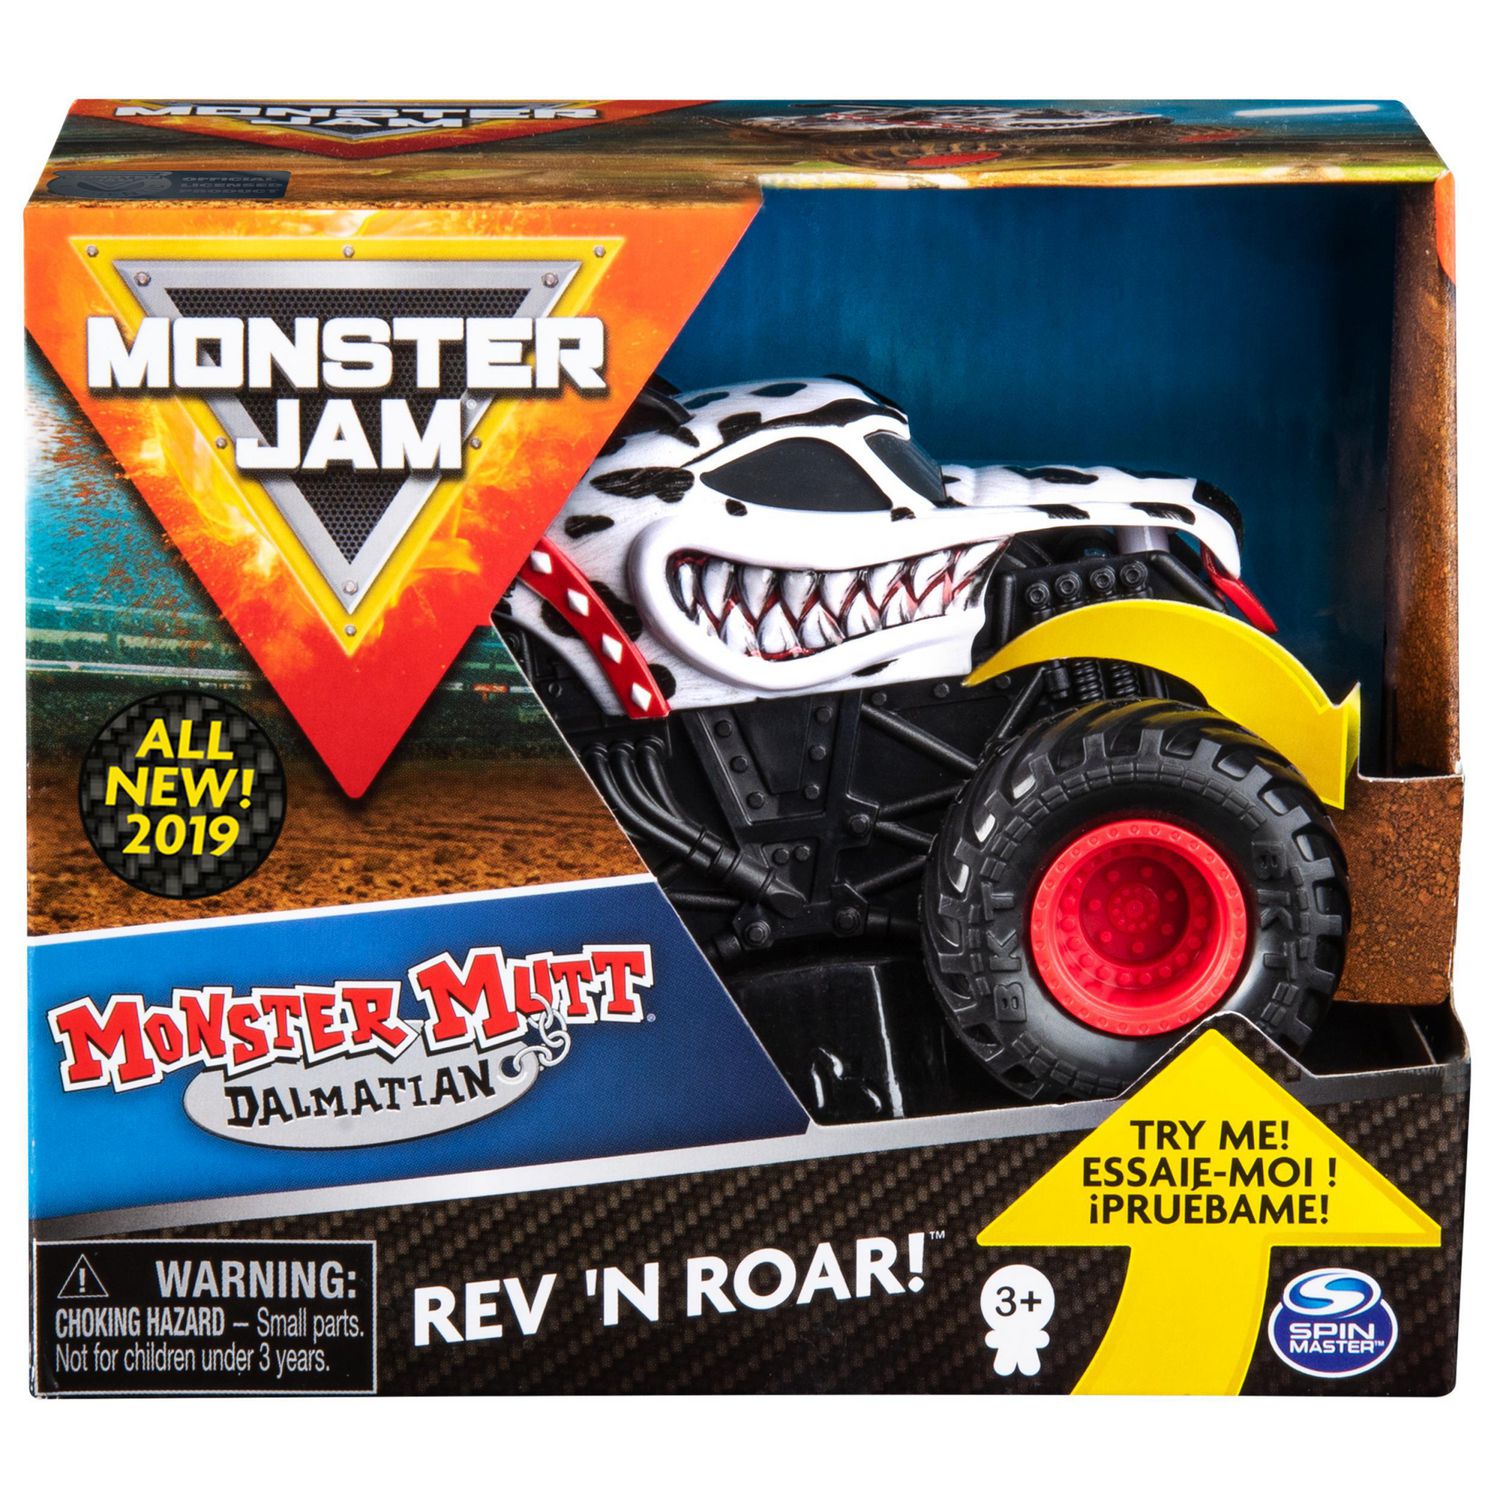 Monster Jam, Official Monster Mutt Dalmatian Rev ‘N Roar Monster Truck,  1:43 Scale